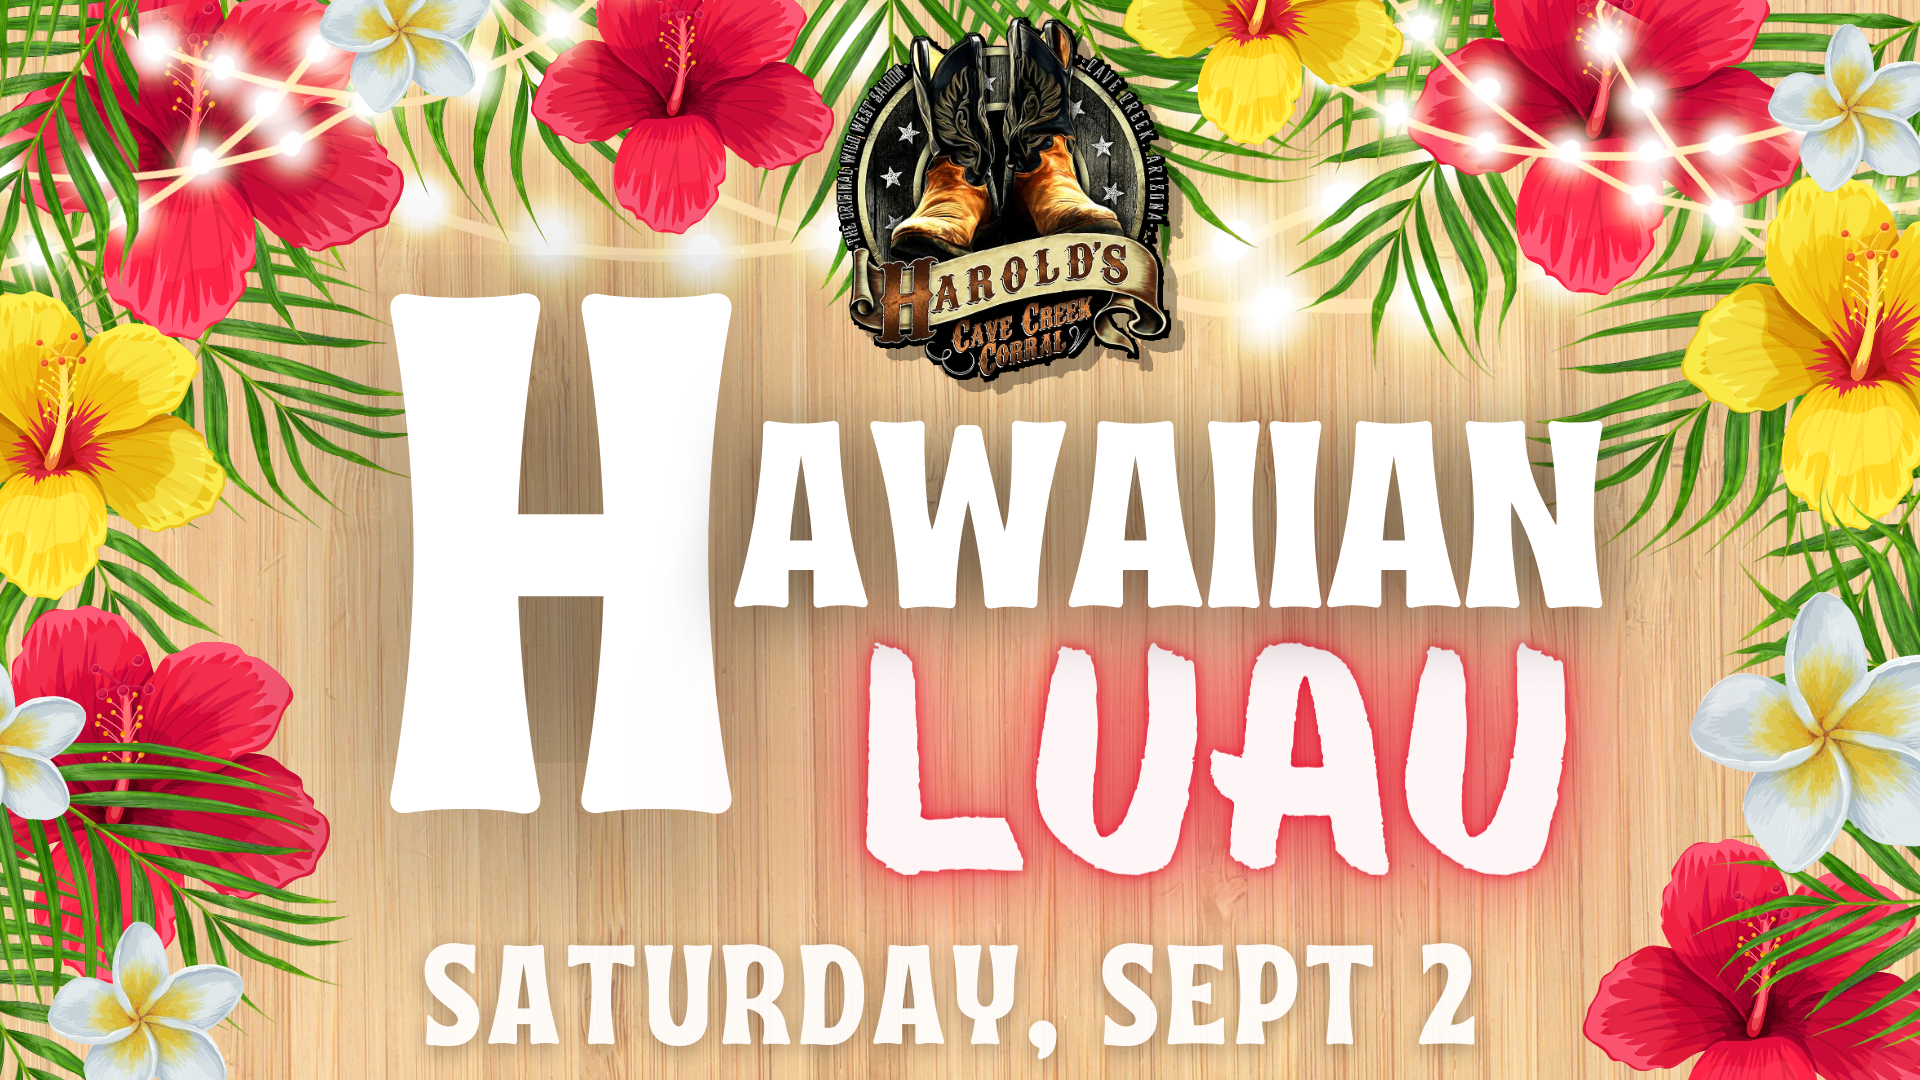 Hawaiian Luau at Harold's Corral